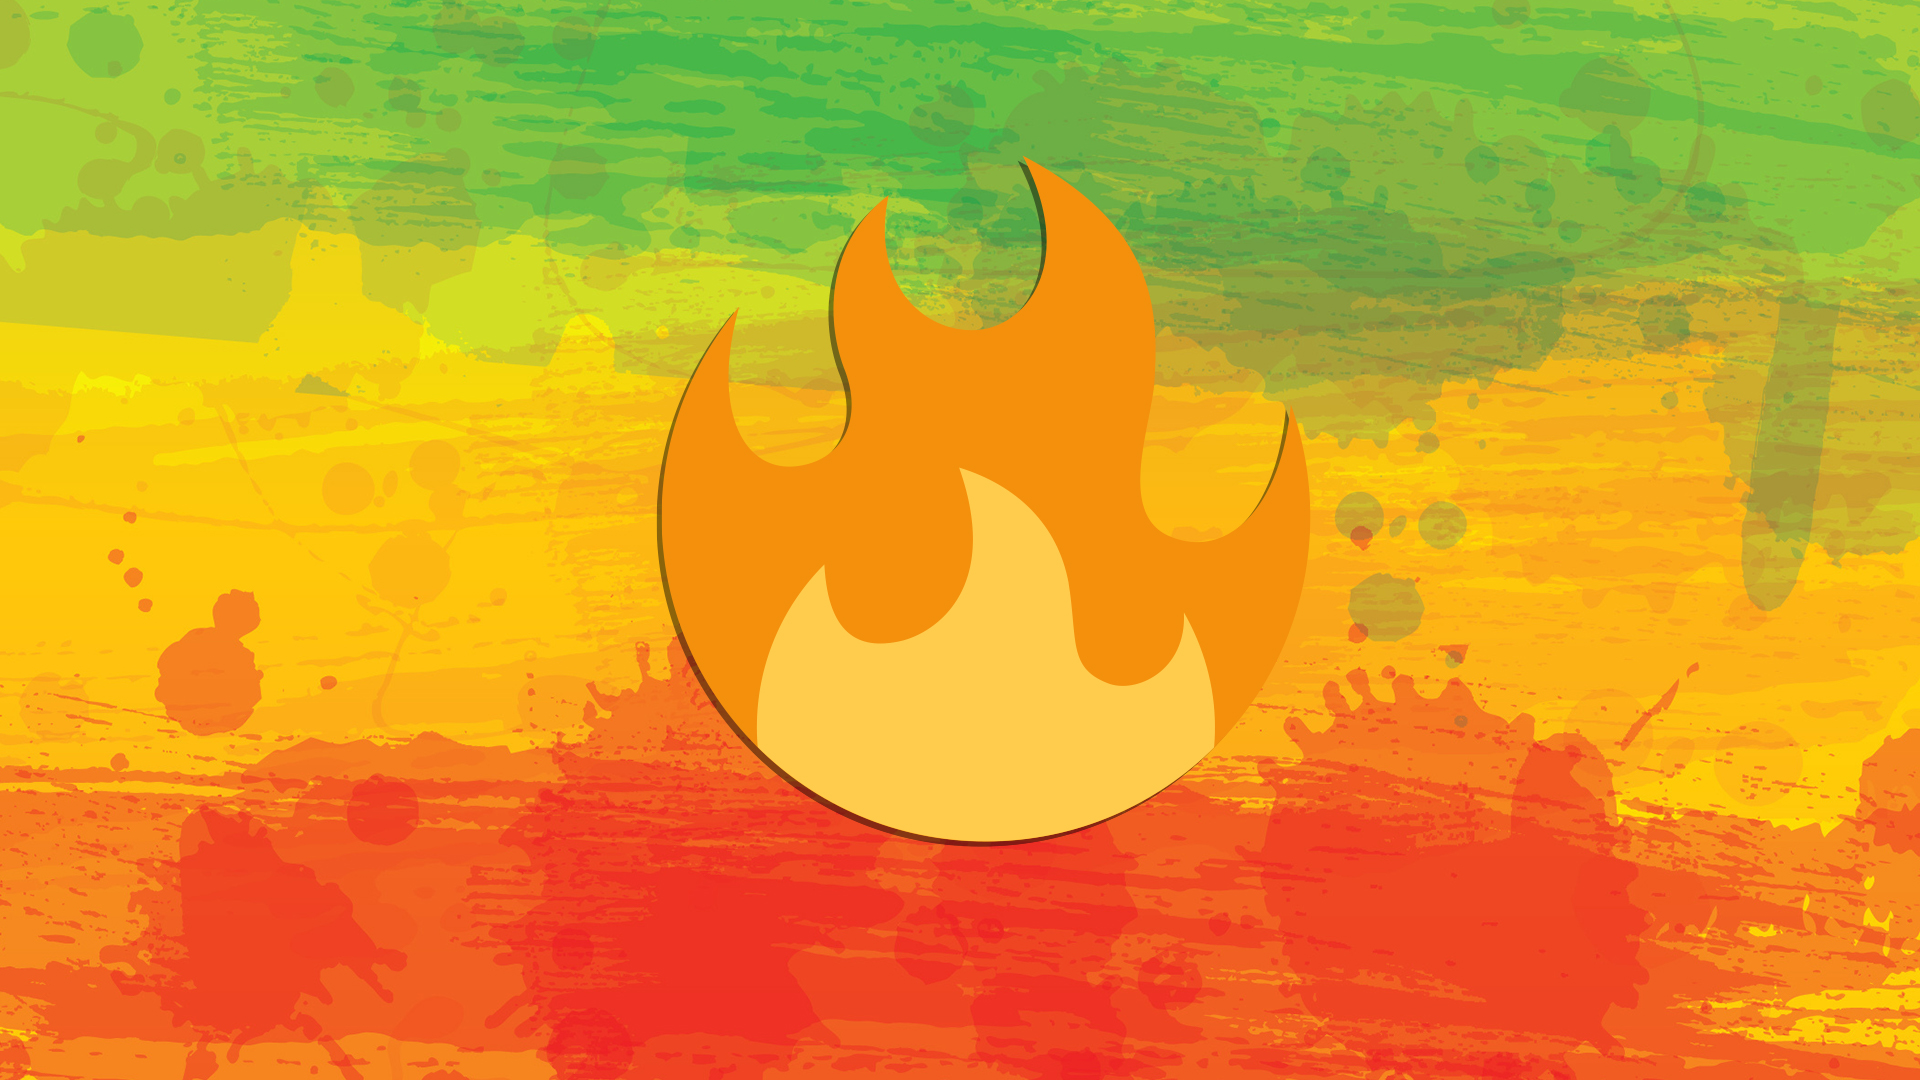 A fire emoji